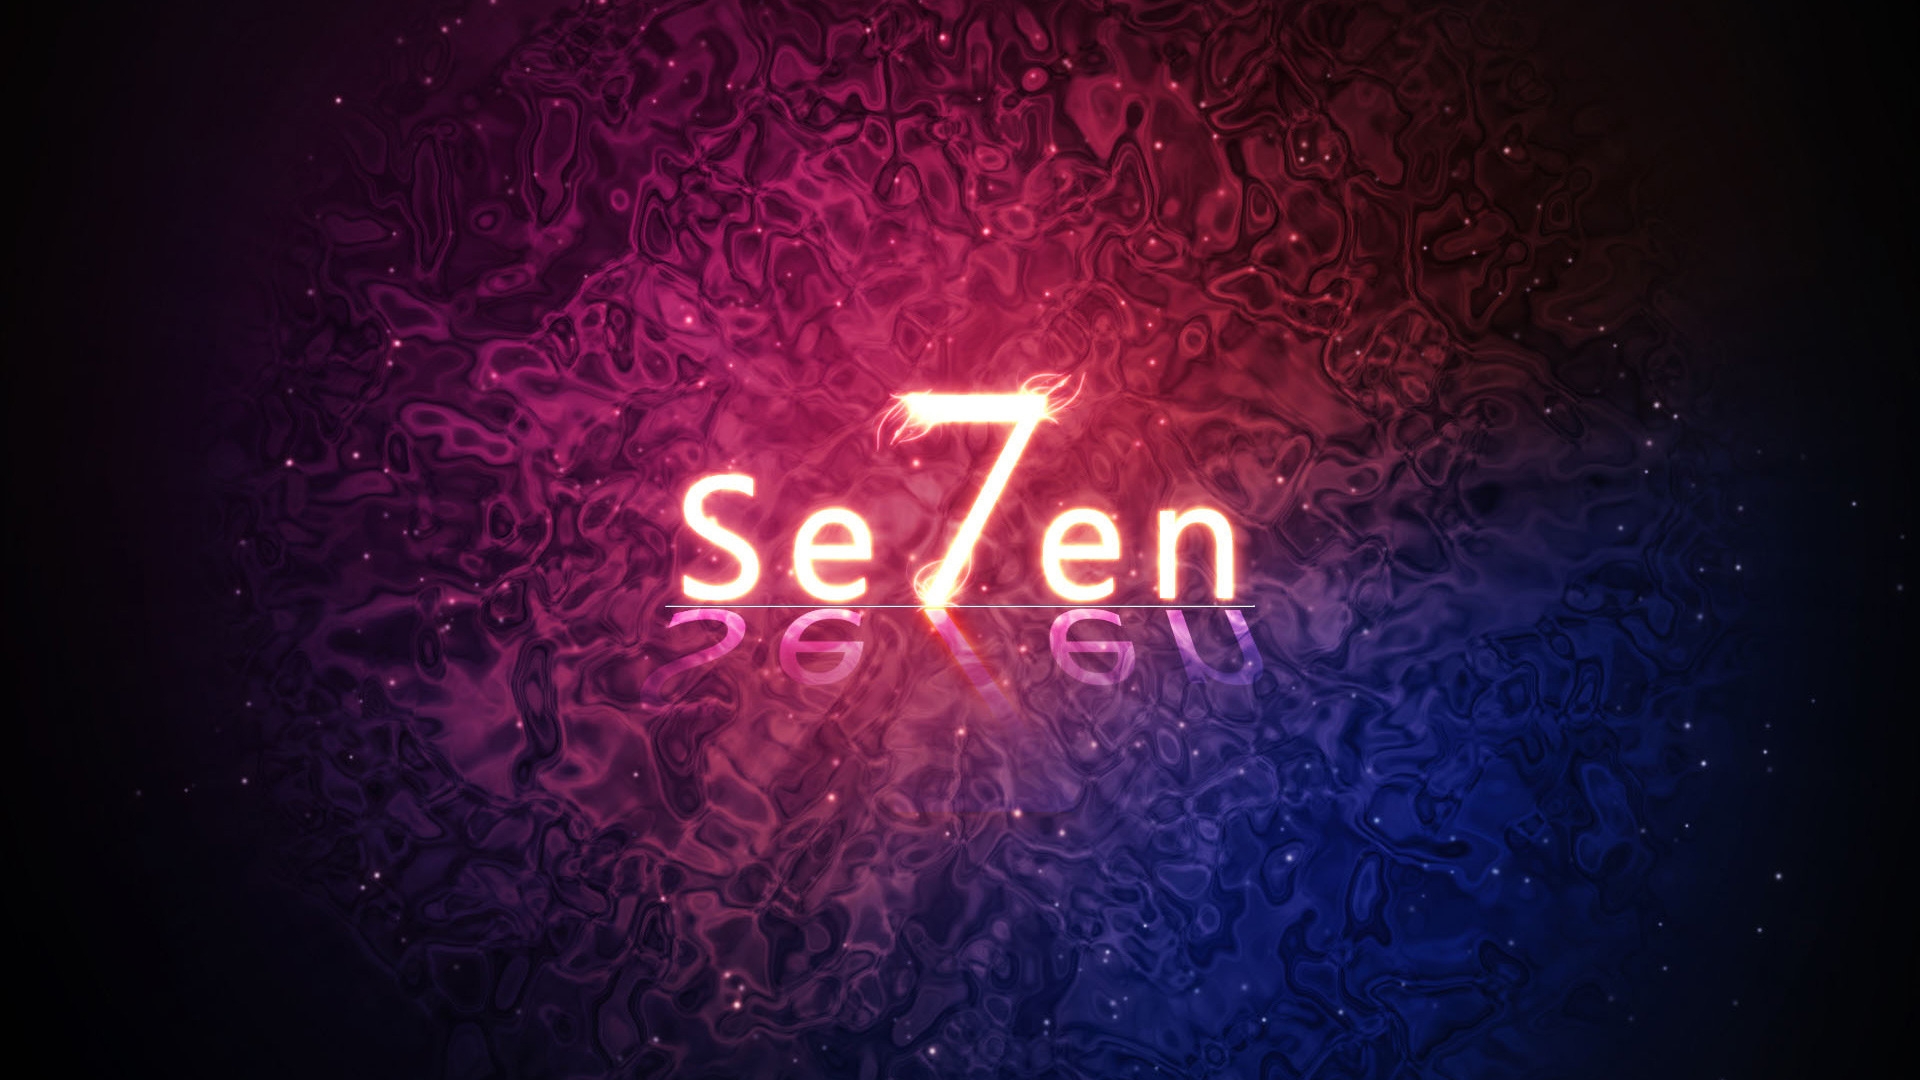 Se7en for 1920 x 1080 HDTV 1080p resolution